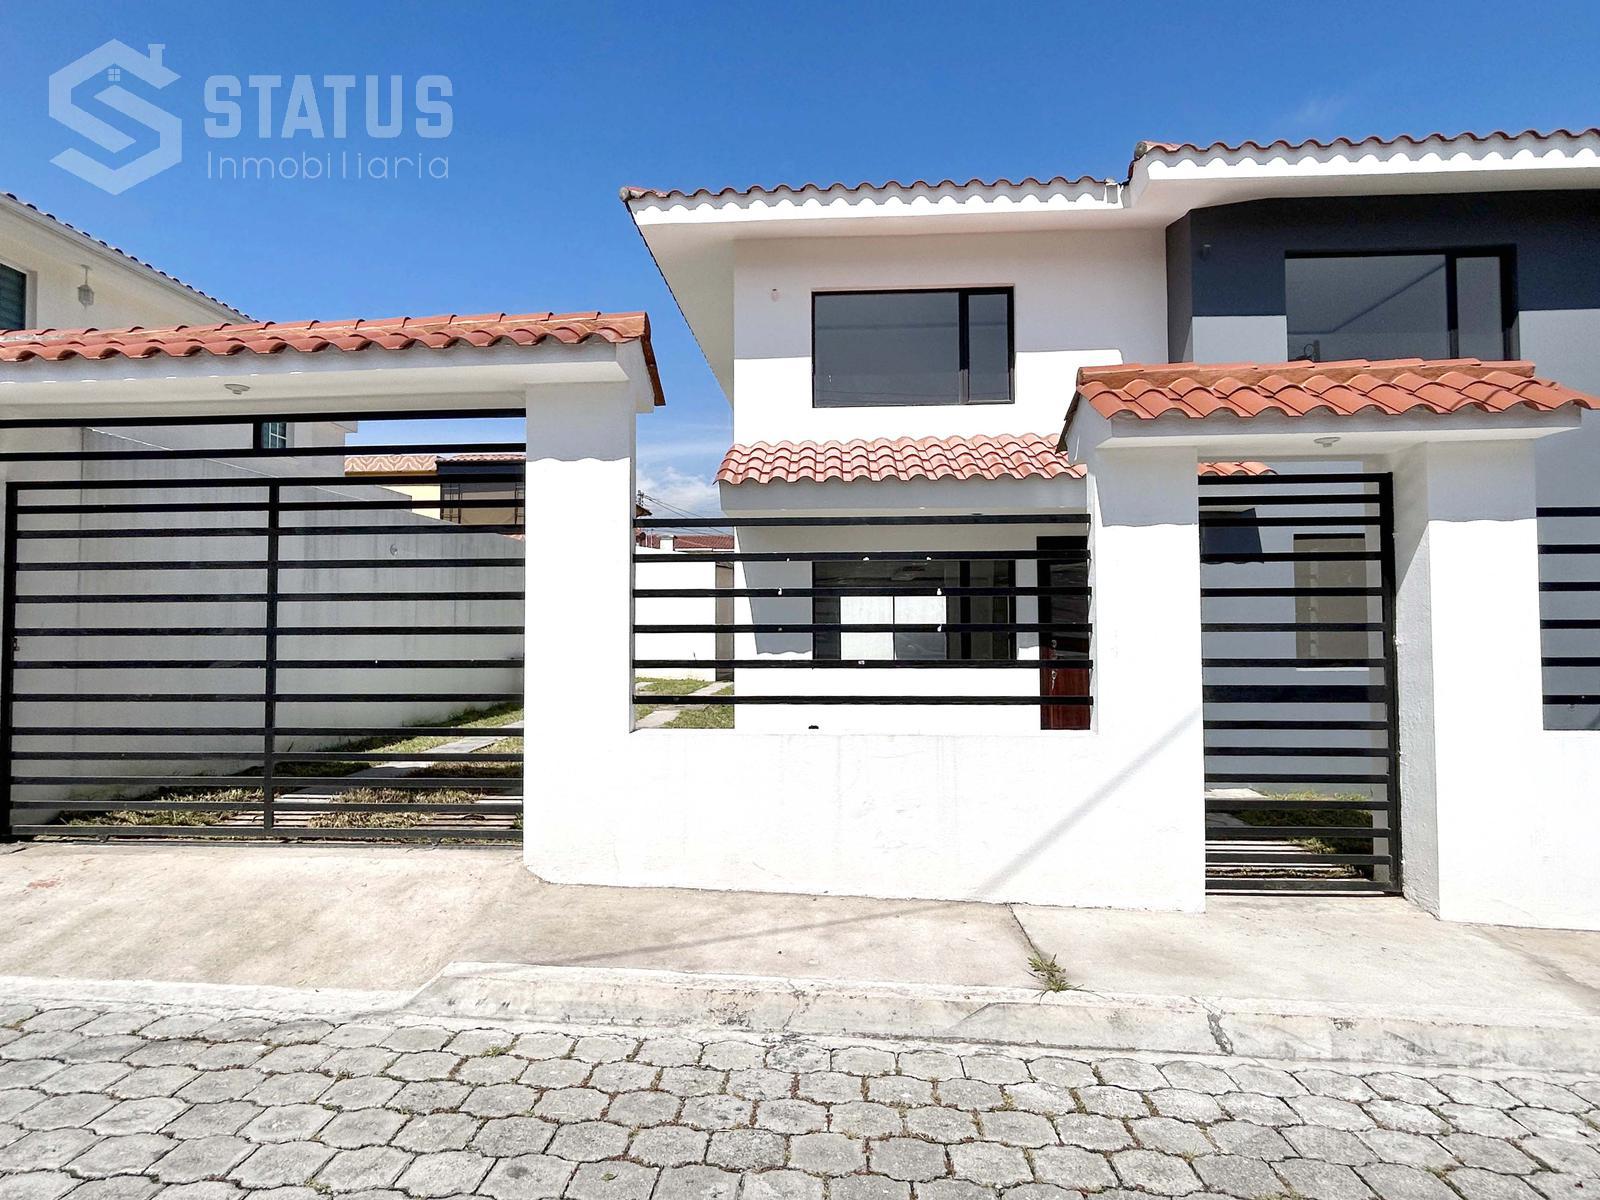 Se vende casa en conjunto, 3 Dorm., 2 Garajes, sector Fajardo – Sangolquí, $155.000